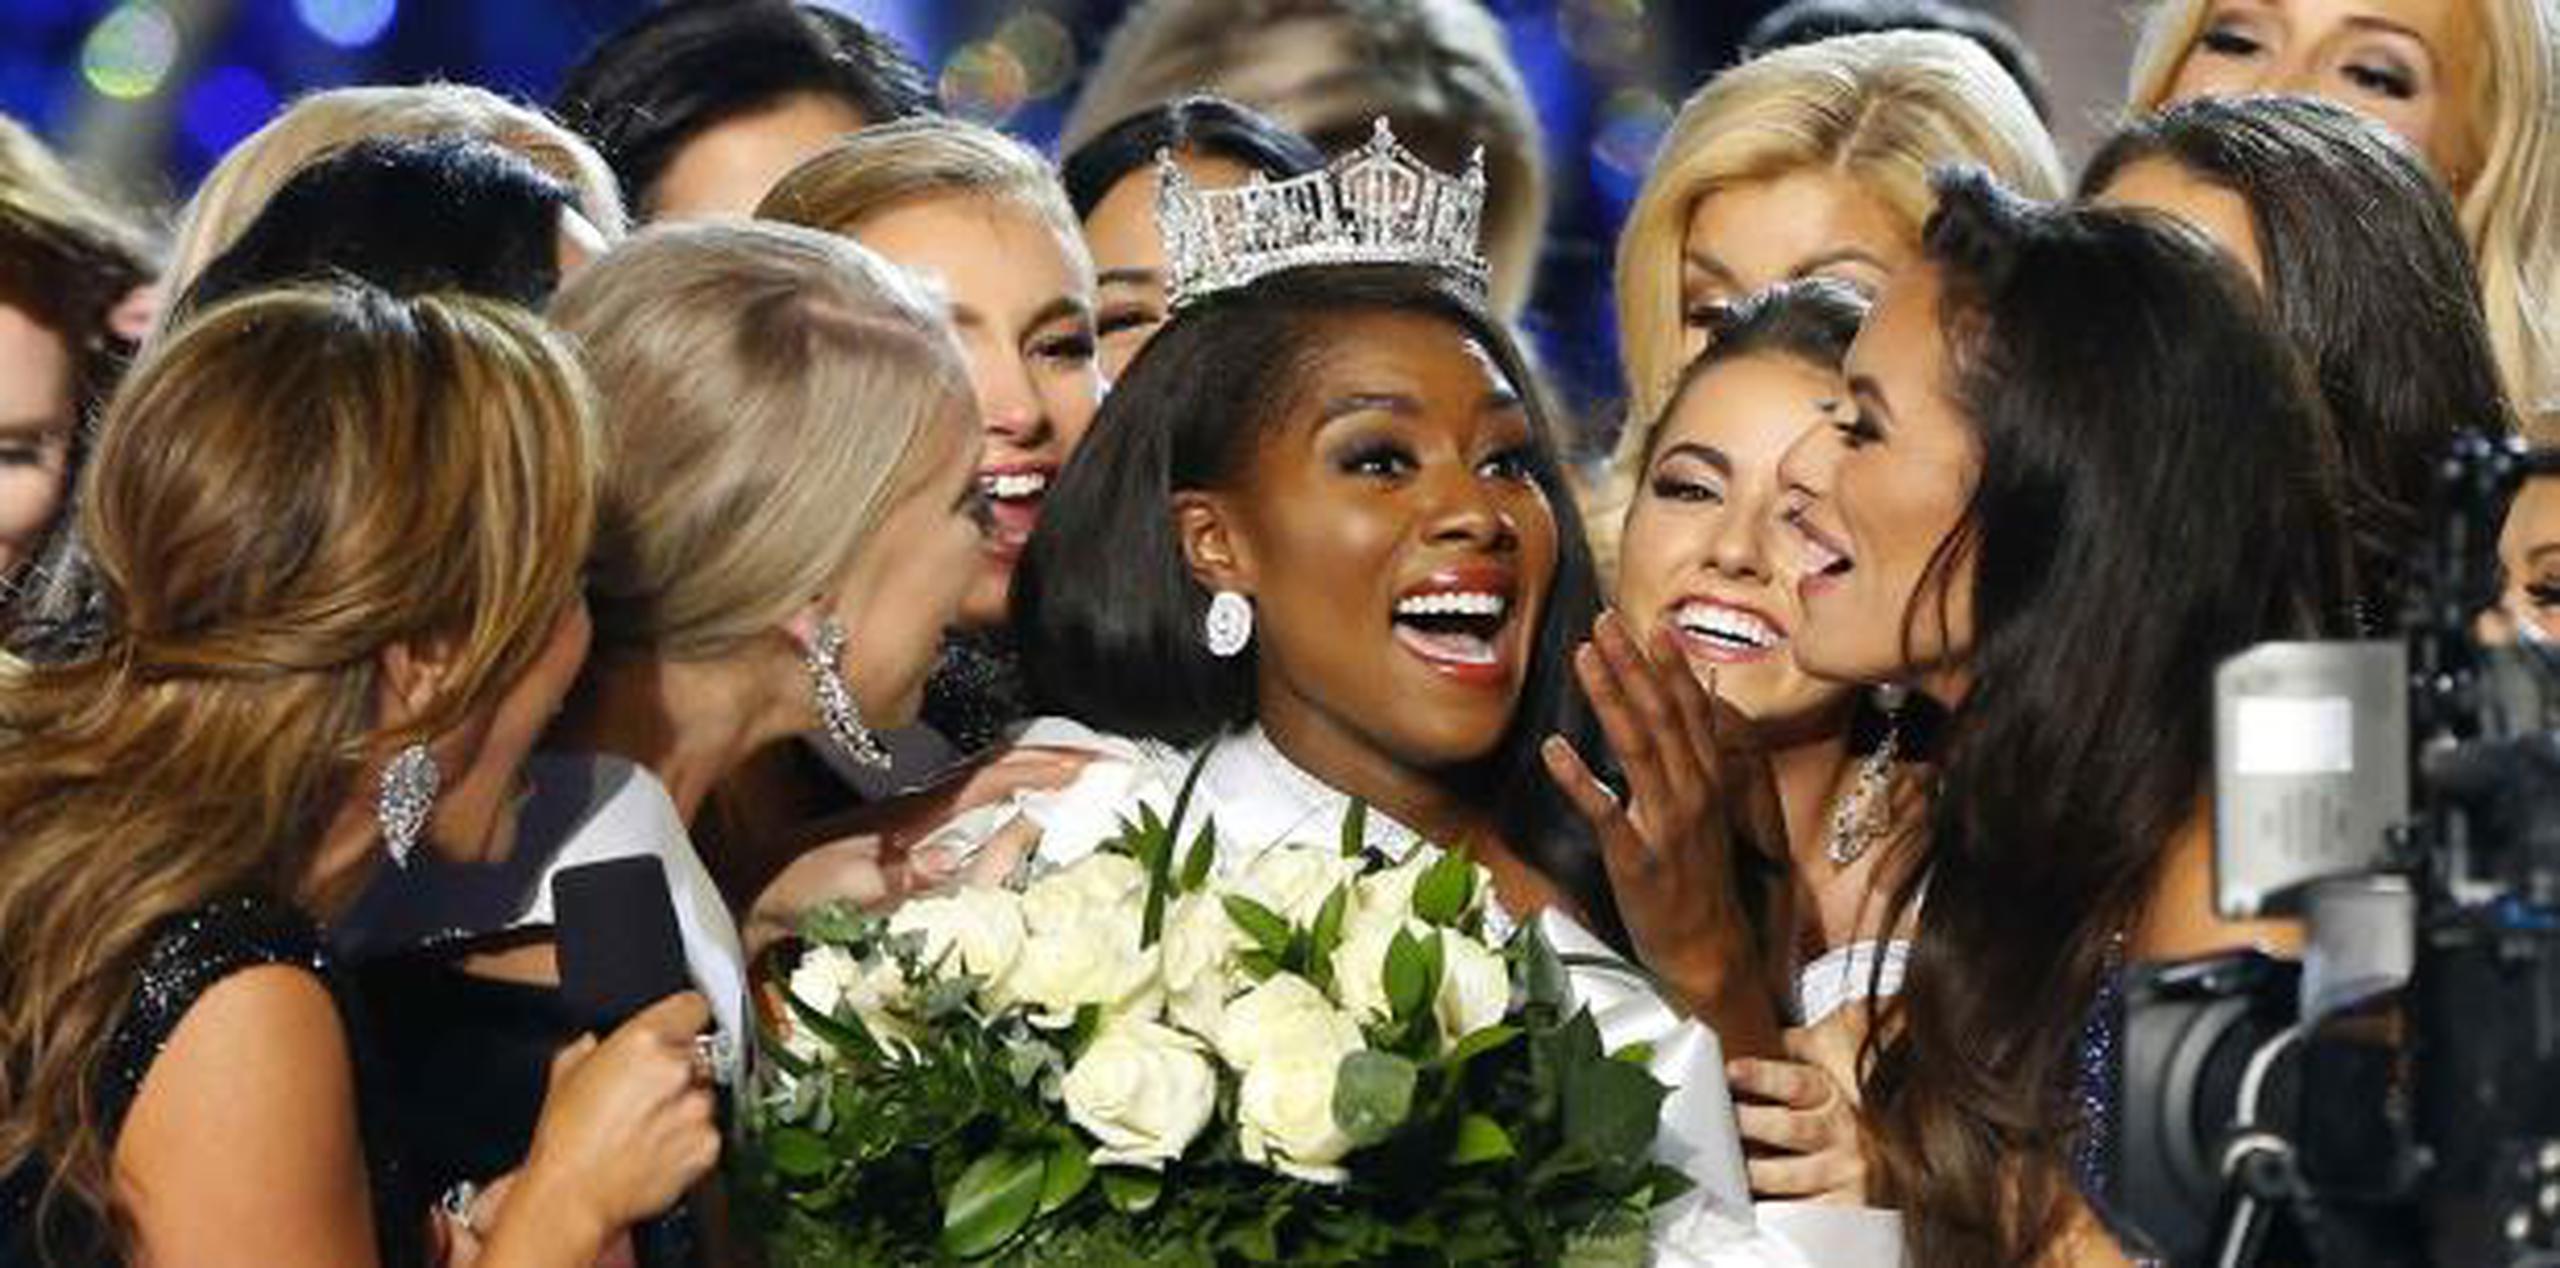 La nueva reina, Miss Nueva York, Nia Imani Franklin, recibió diversas muestras de afecto de las otras participantes. (AP)